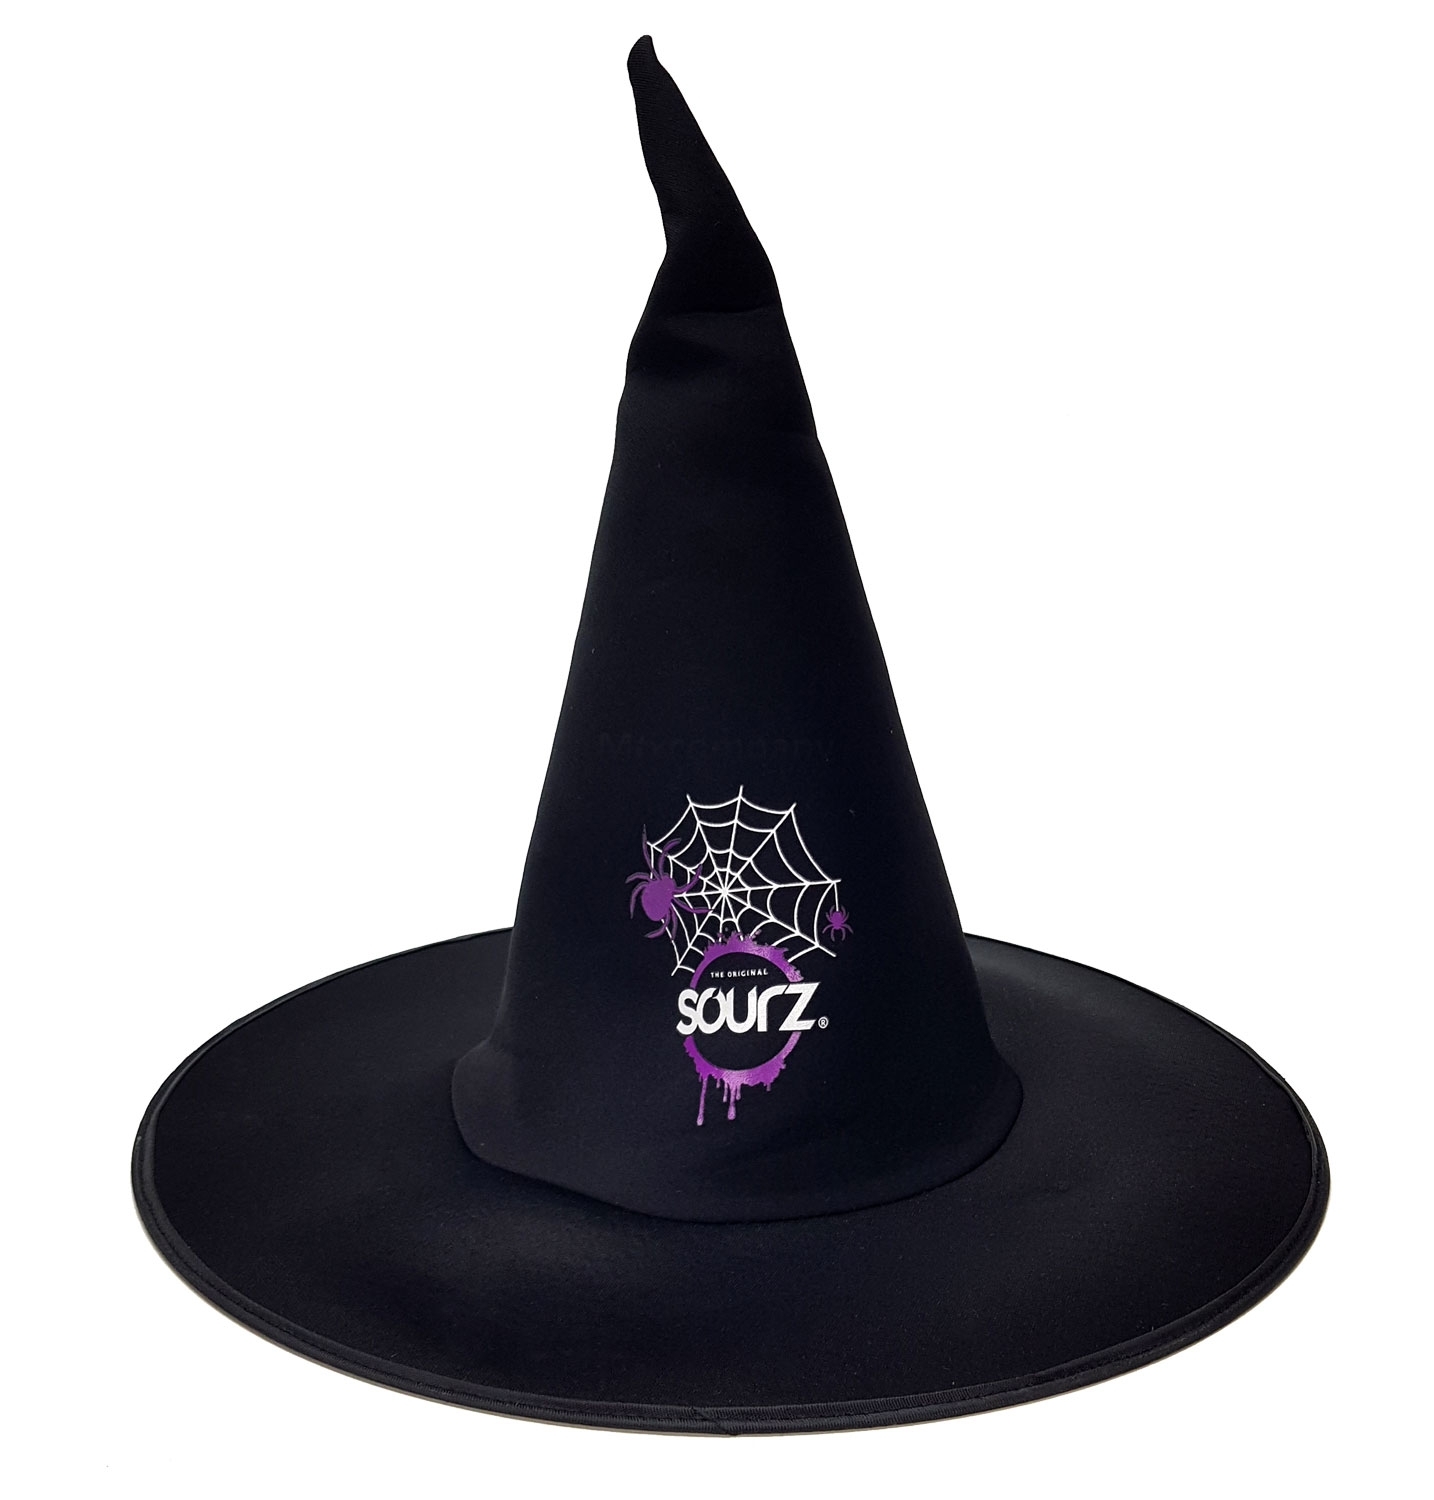 Sourz schwarzer Hexenhut für Karneval und Halloween